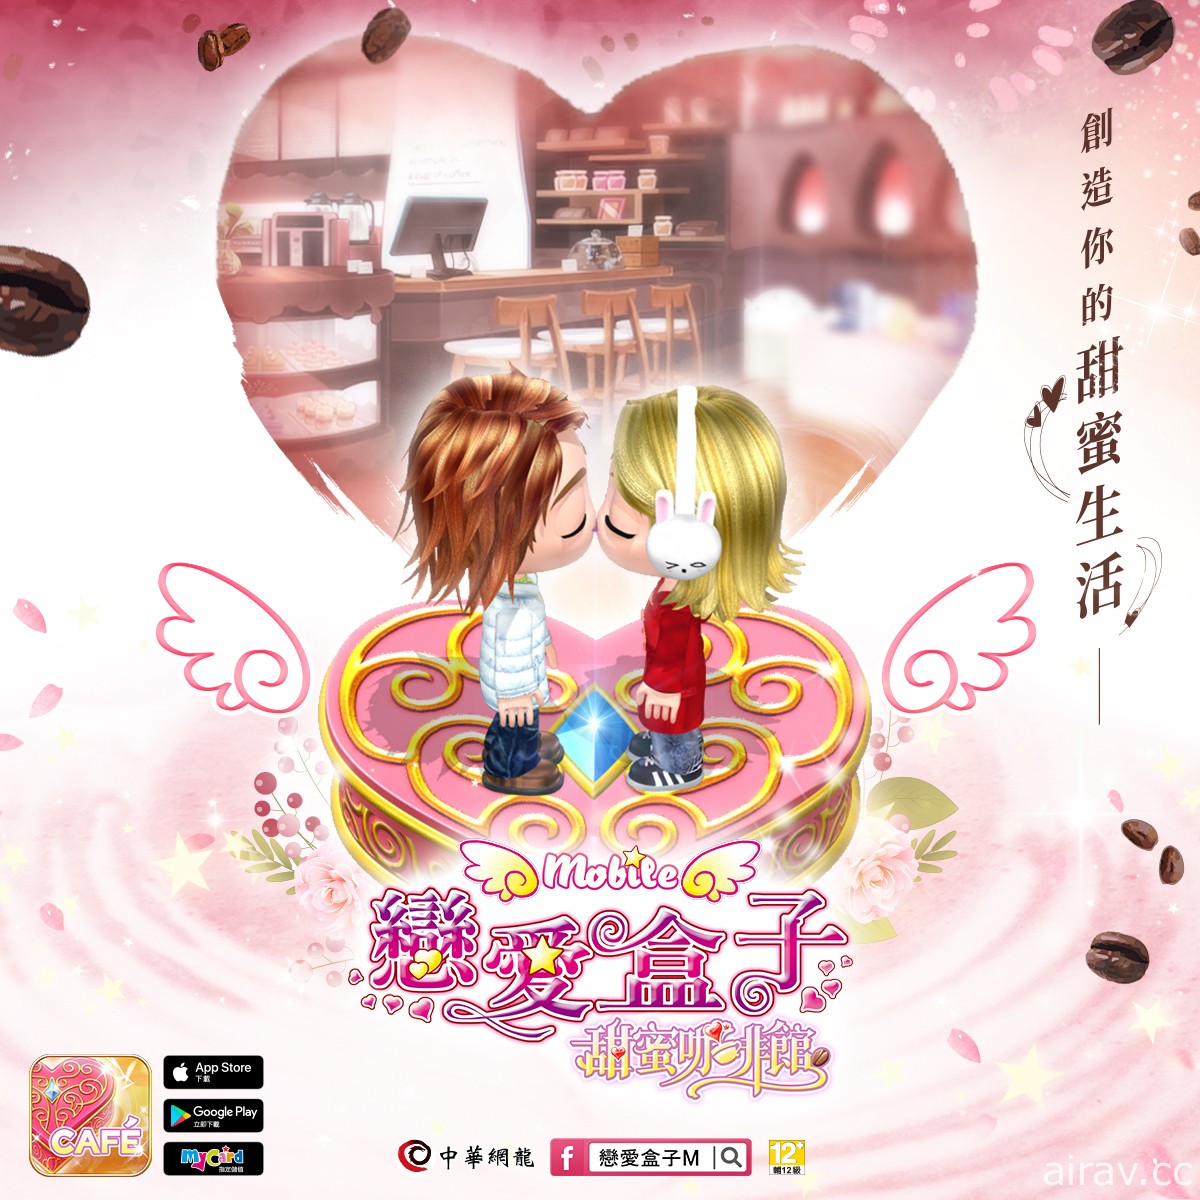 时尚换装 x 恋爱交友游戏《恋爱盒子 M》推出全新资料片“甜蜜咖啡馆”